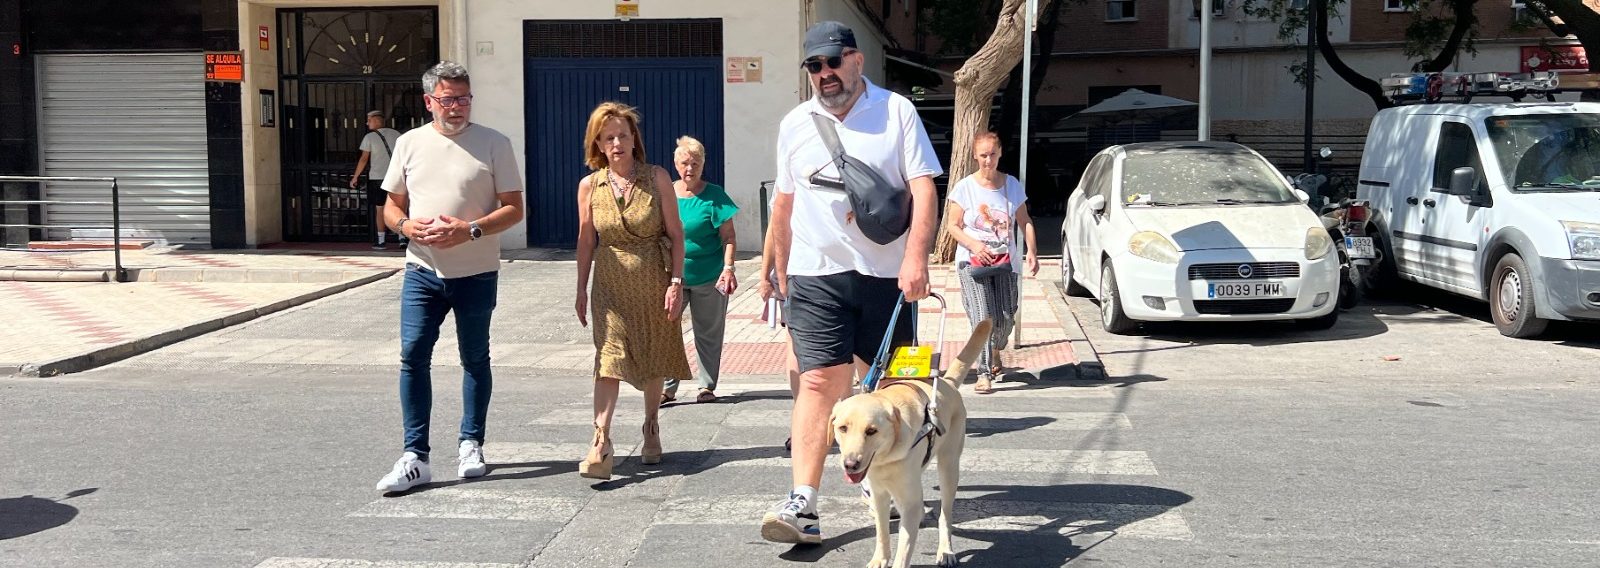 El PSOE denuncia la “insensibilidad” de De la Torre con las personas ciegas y exige medidas de accesibilidad en los barrios